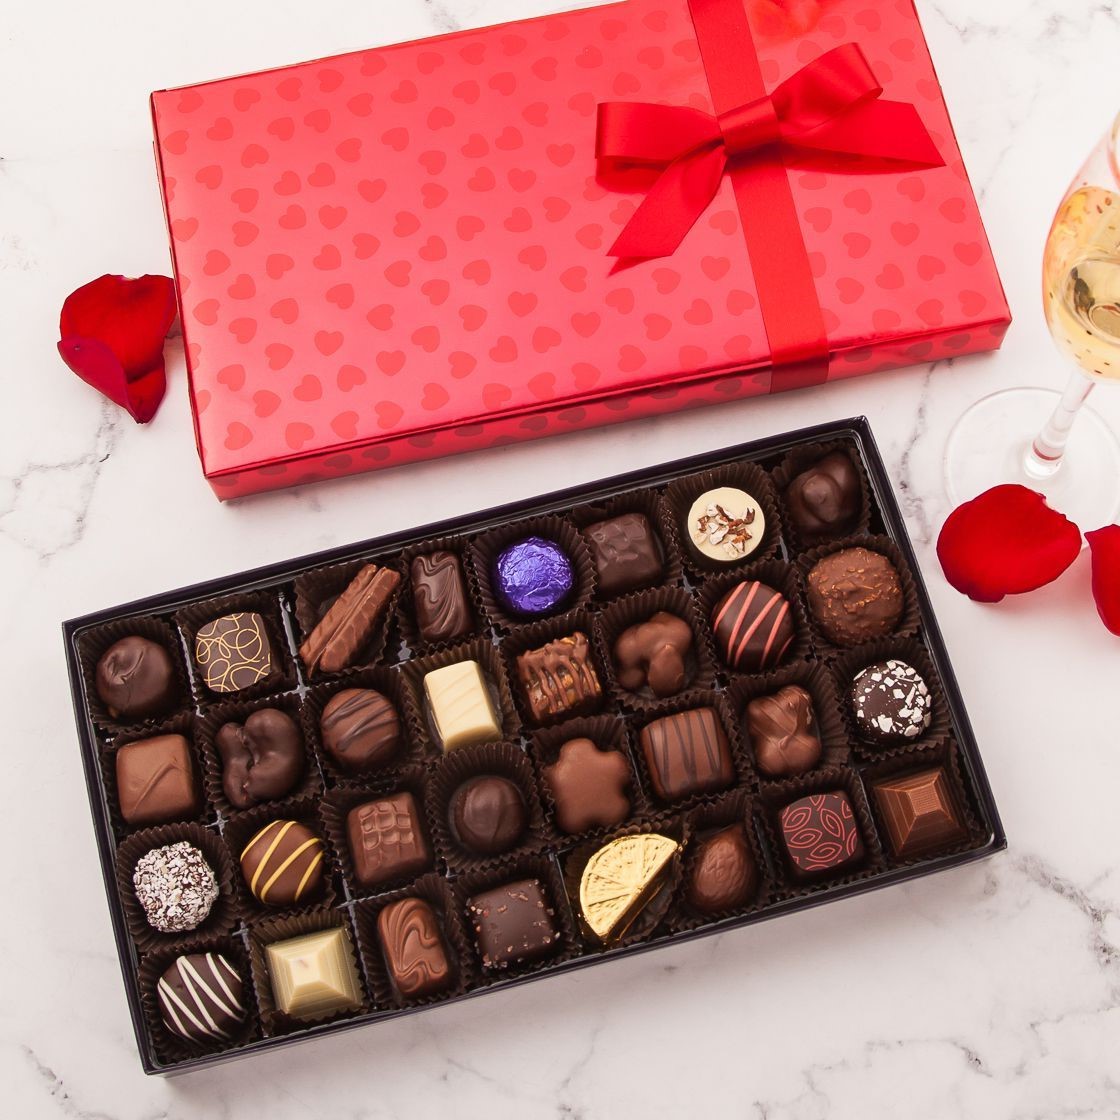 Bonbons au chocolat comme cadeau de Saint-Valentin.